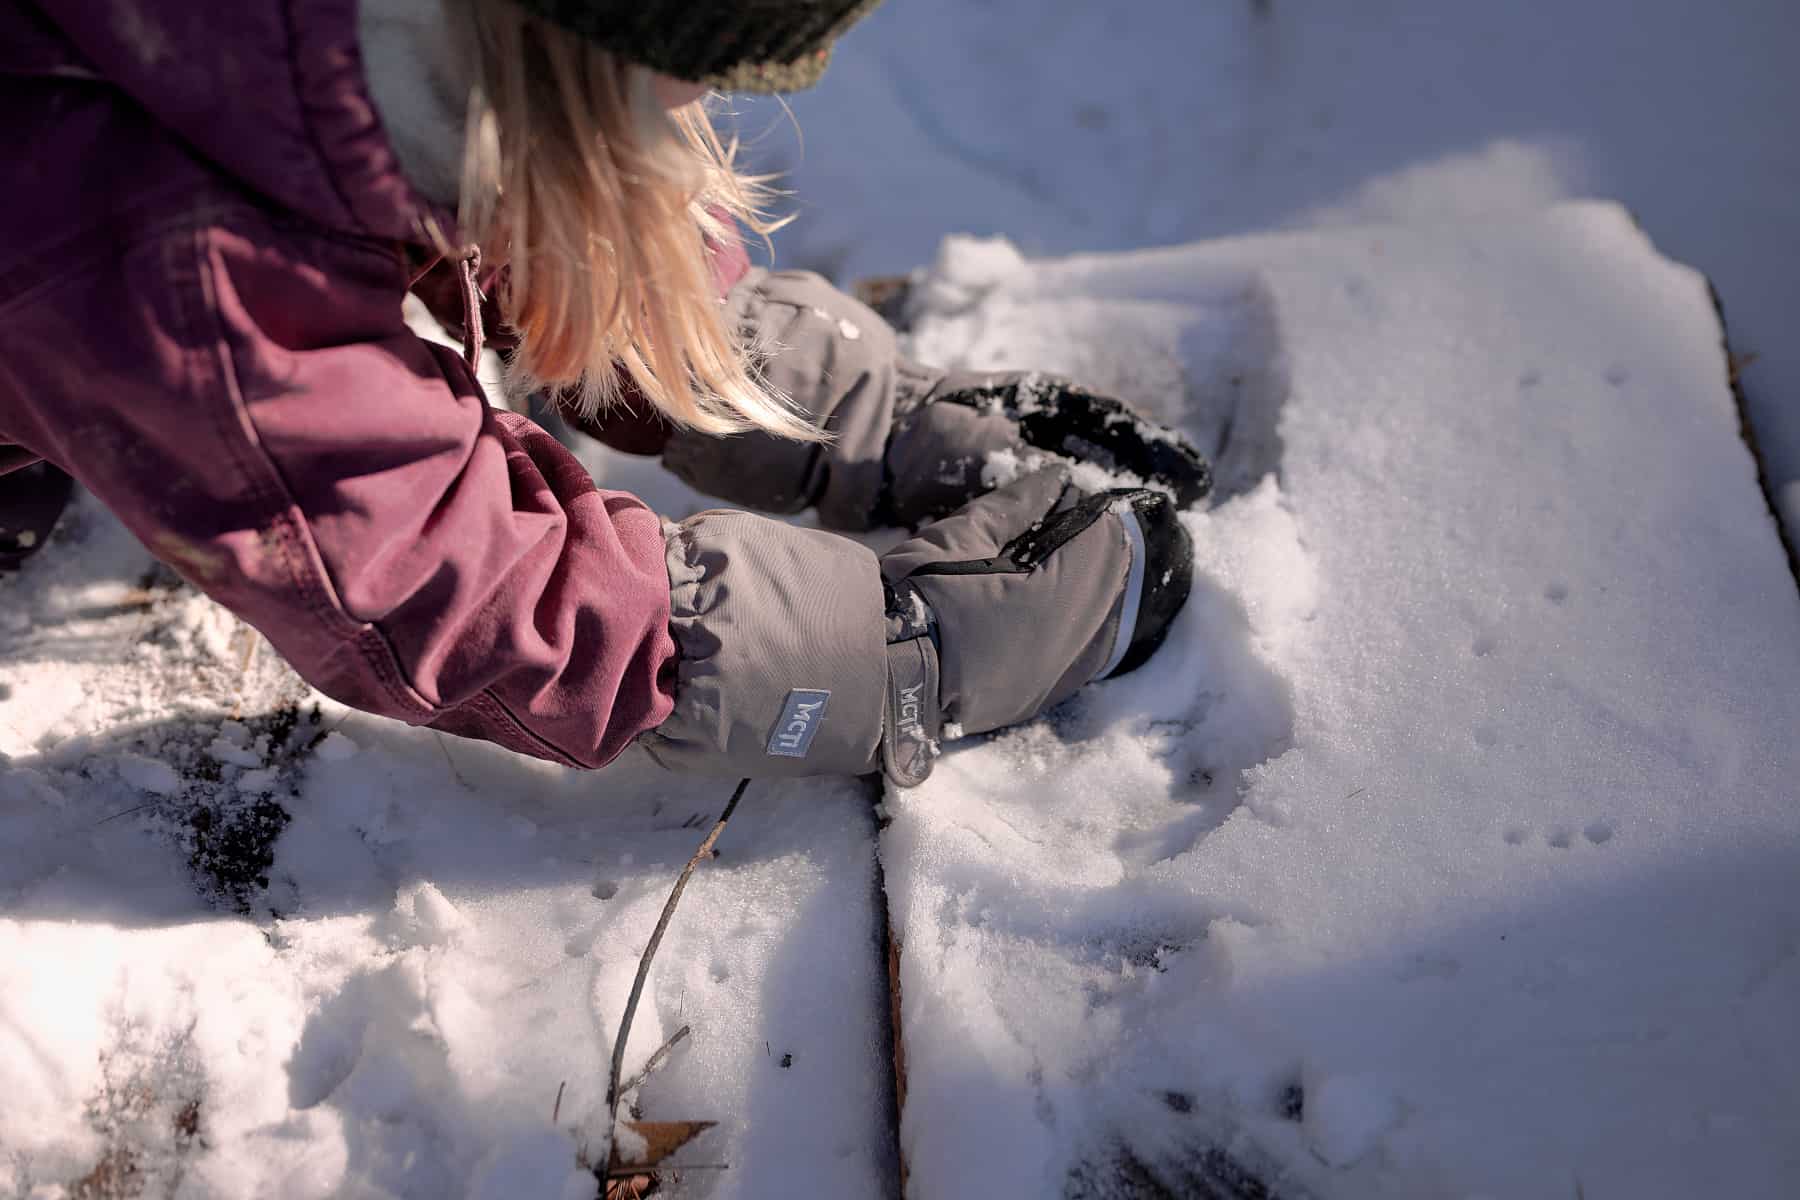 Kids Boy Girl Winter Waterproof Warm Gloves Ski Children Mittens Snow Outdoor US 